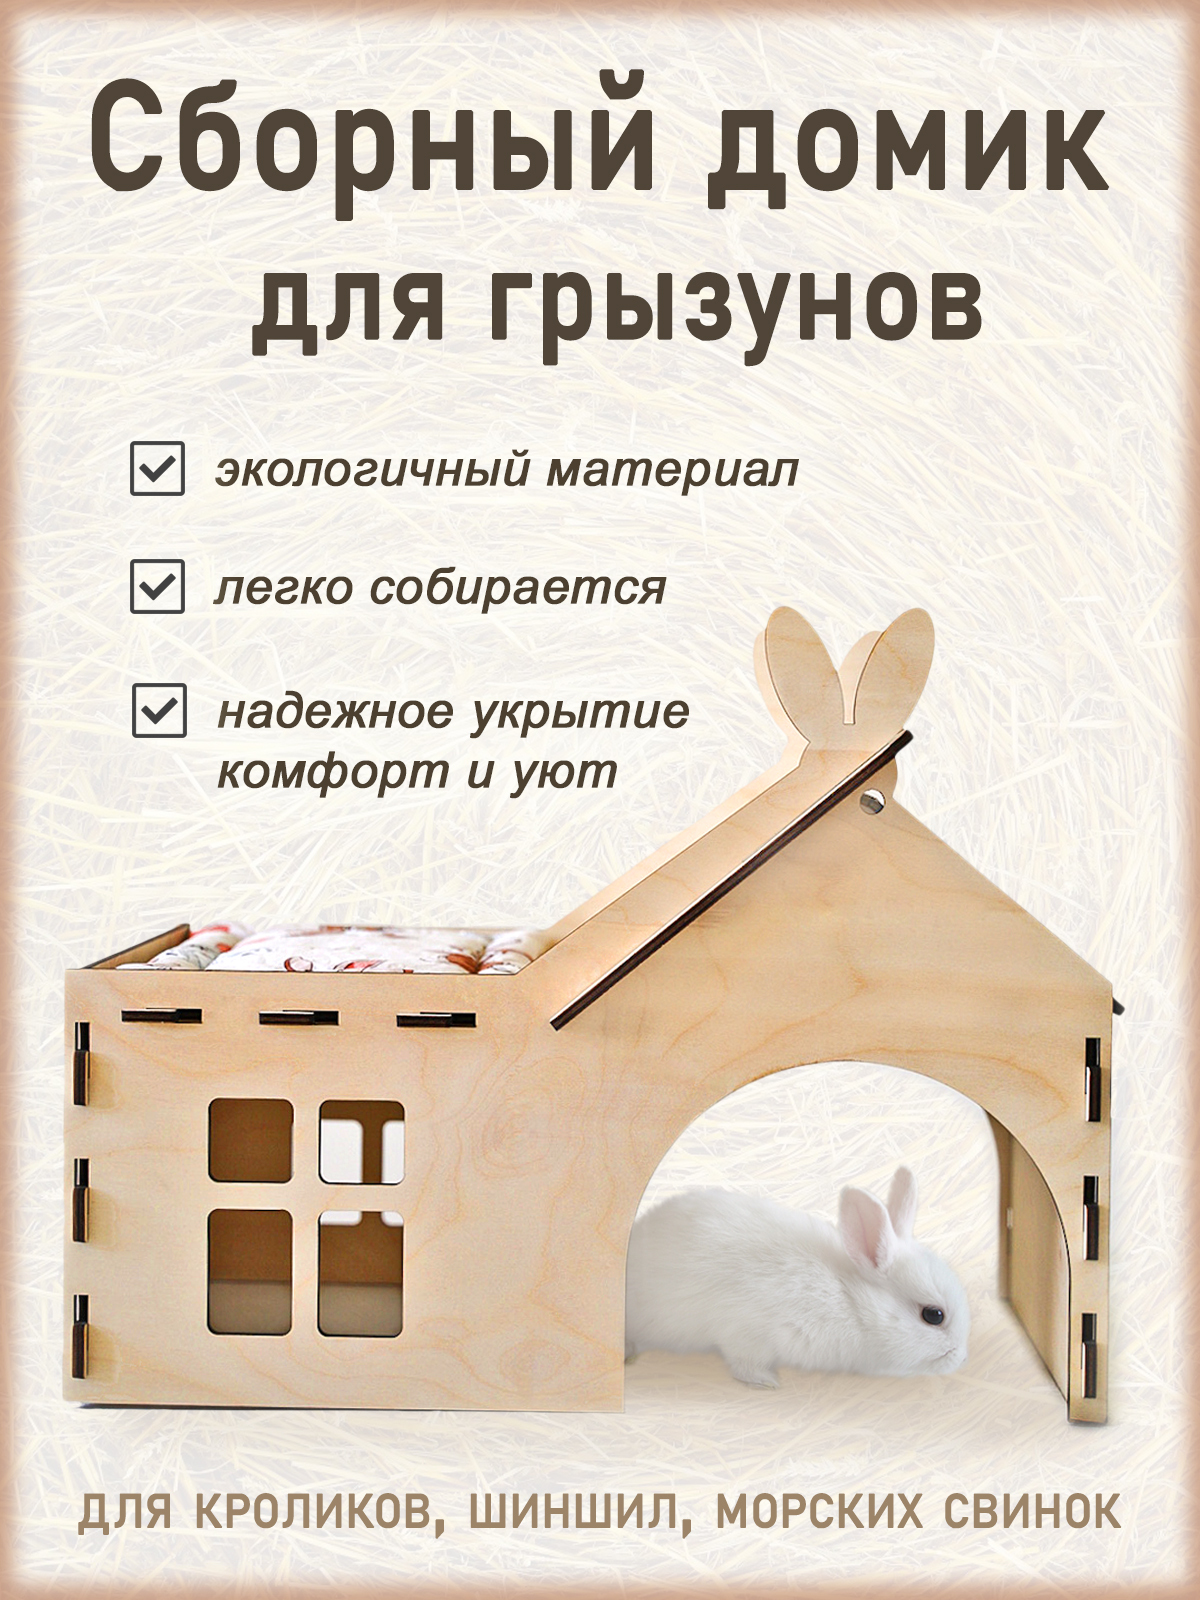 Дом кролика